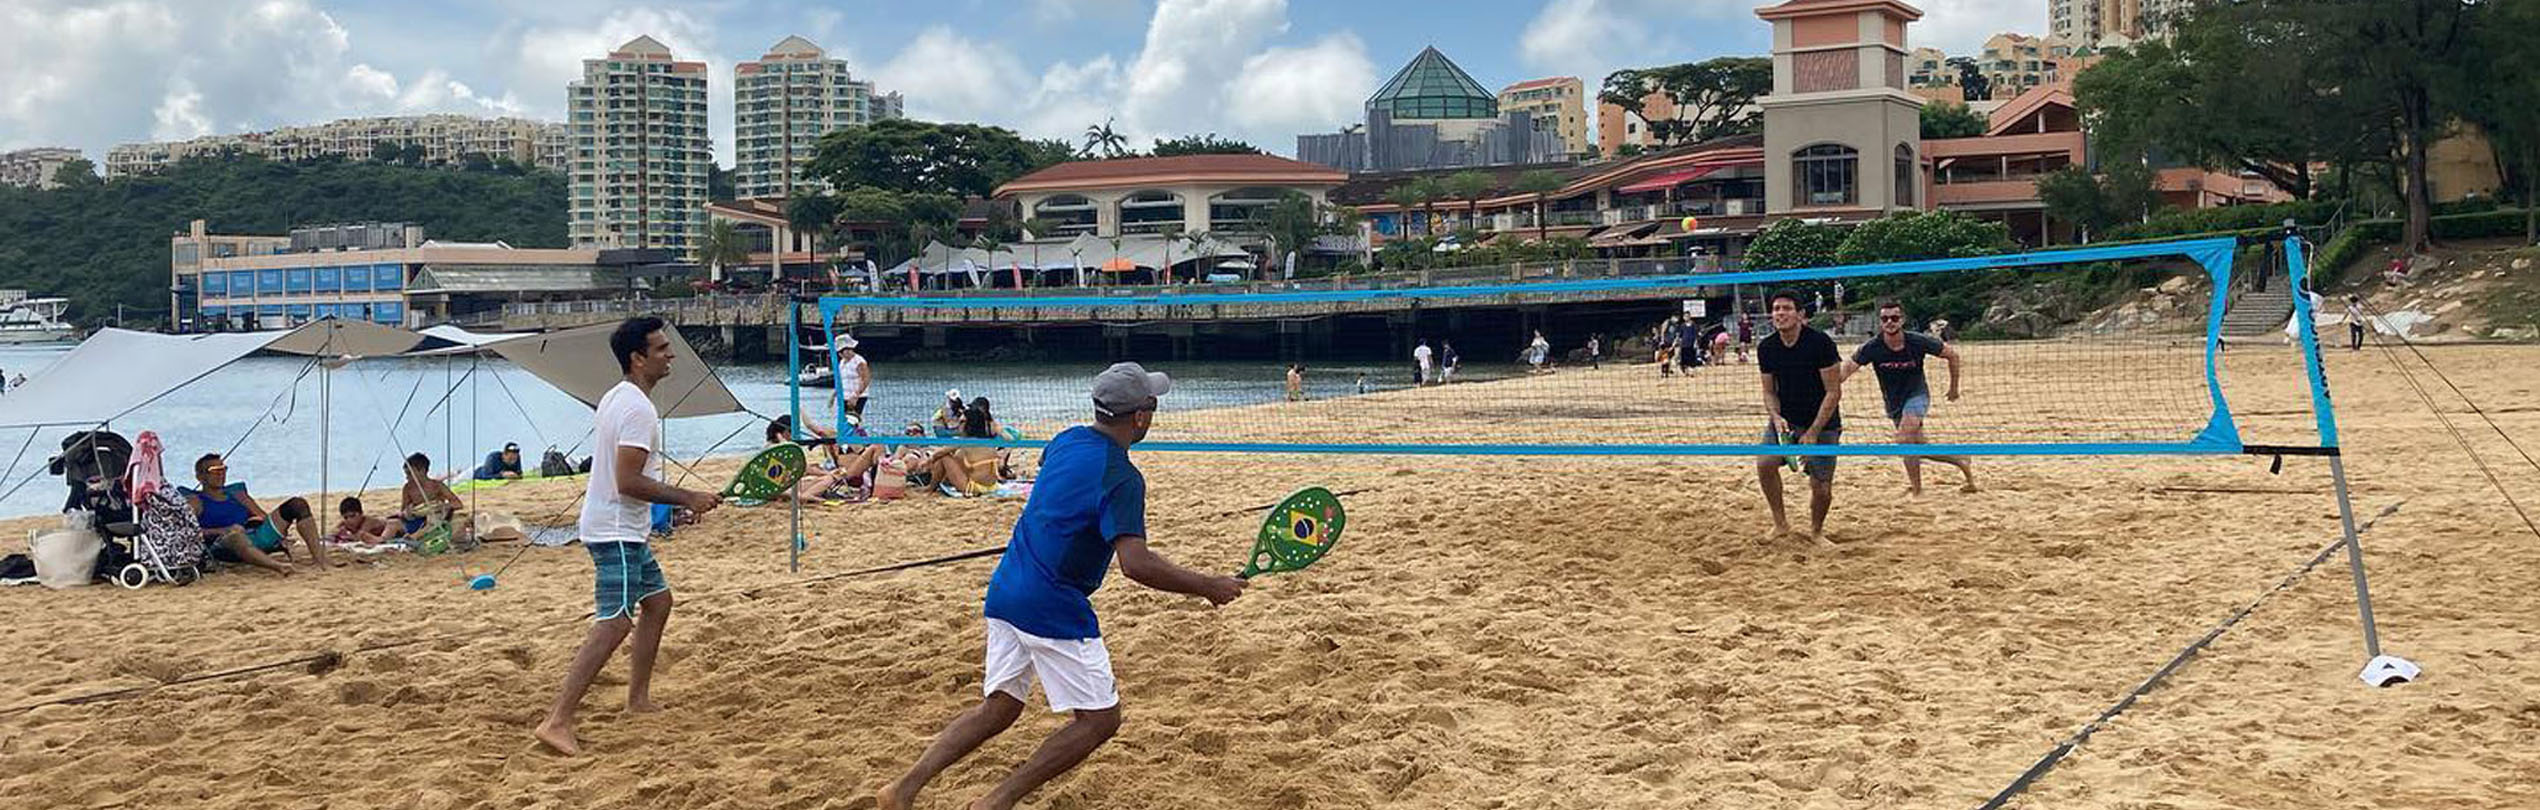 bewe beach tennis racket